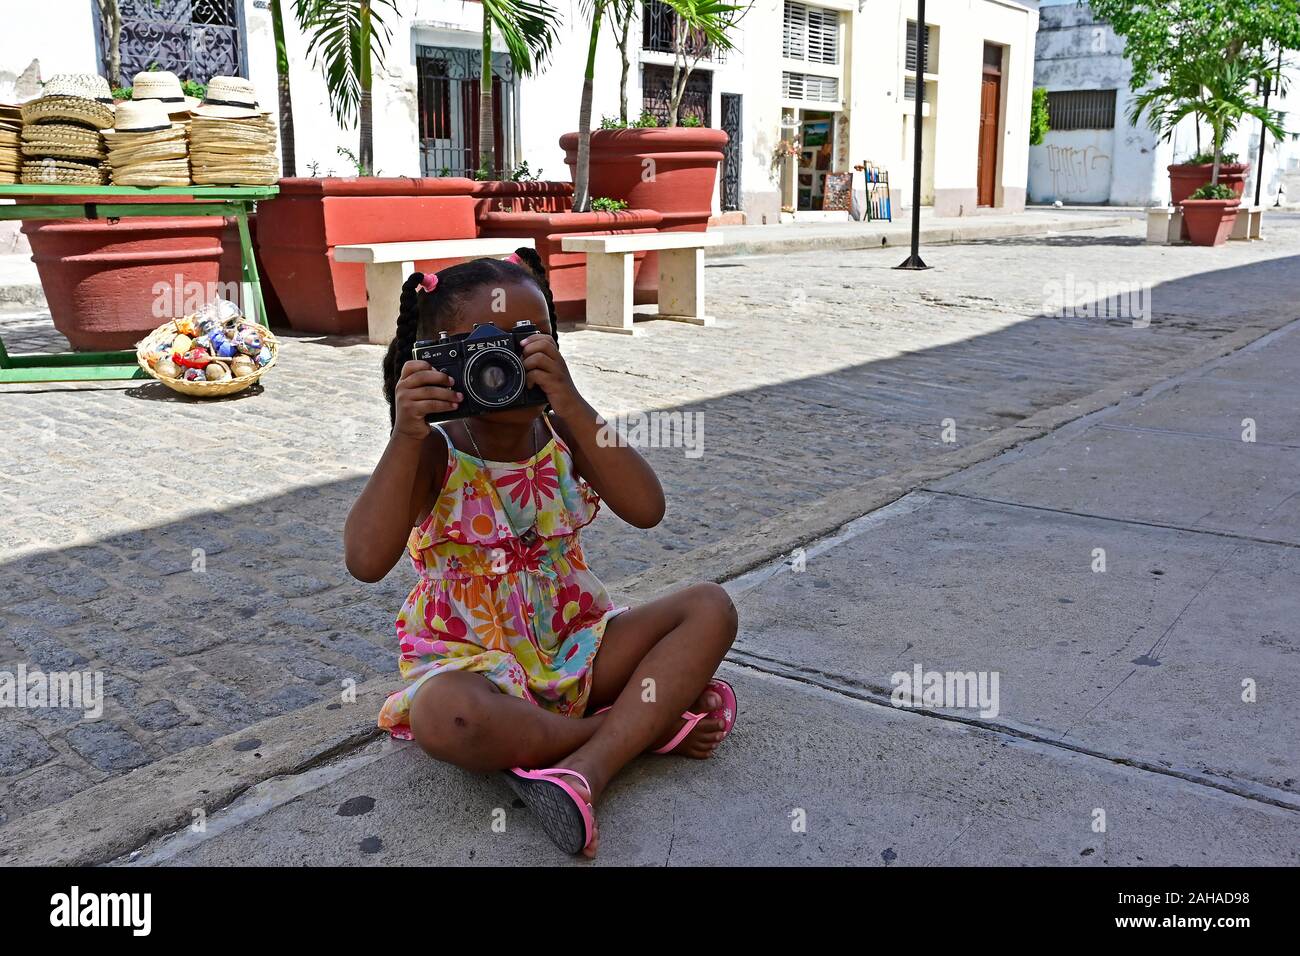 25.07.2019, Cienfuegos, Cienfuegos, Cuba - cuba pequeña niña sentada en la  calle y toma fotos con una analógica, antigua cámara reflex Zenit espejo.  Tod Fotografía de stock - Alamy